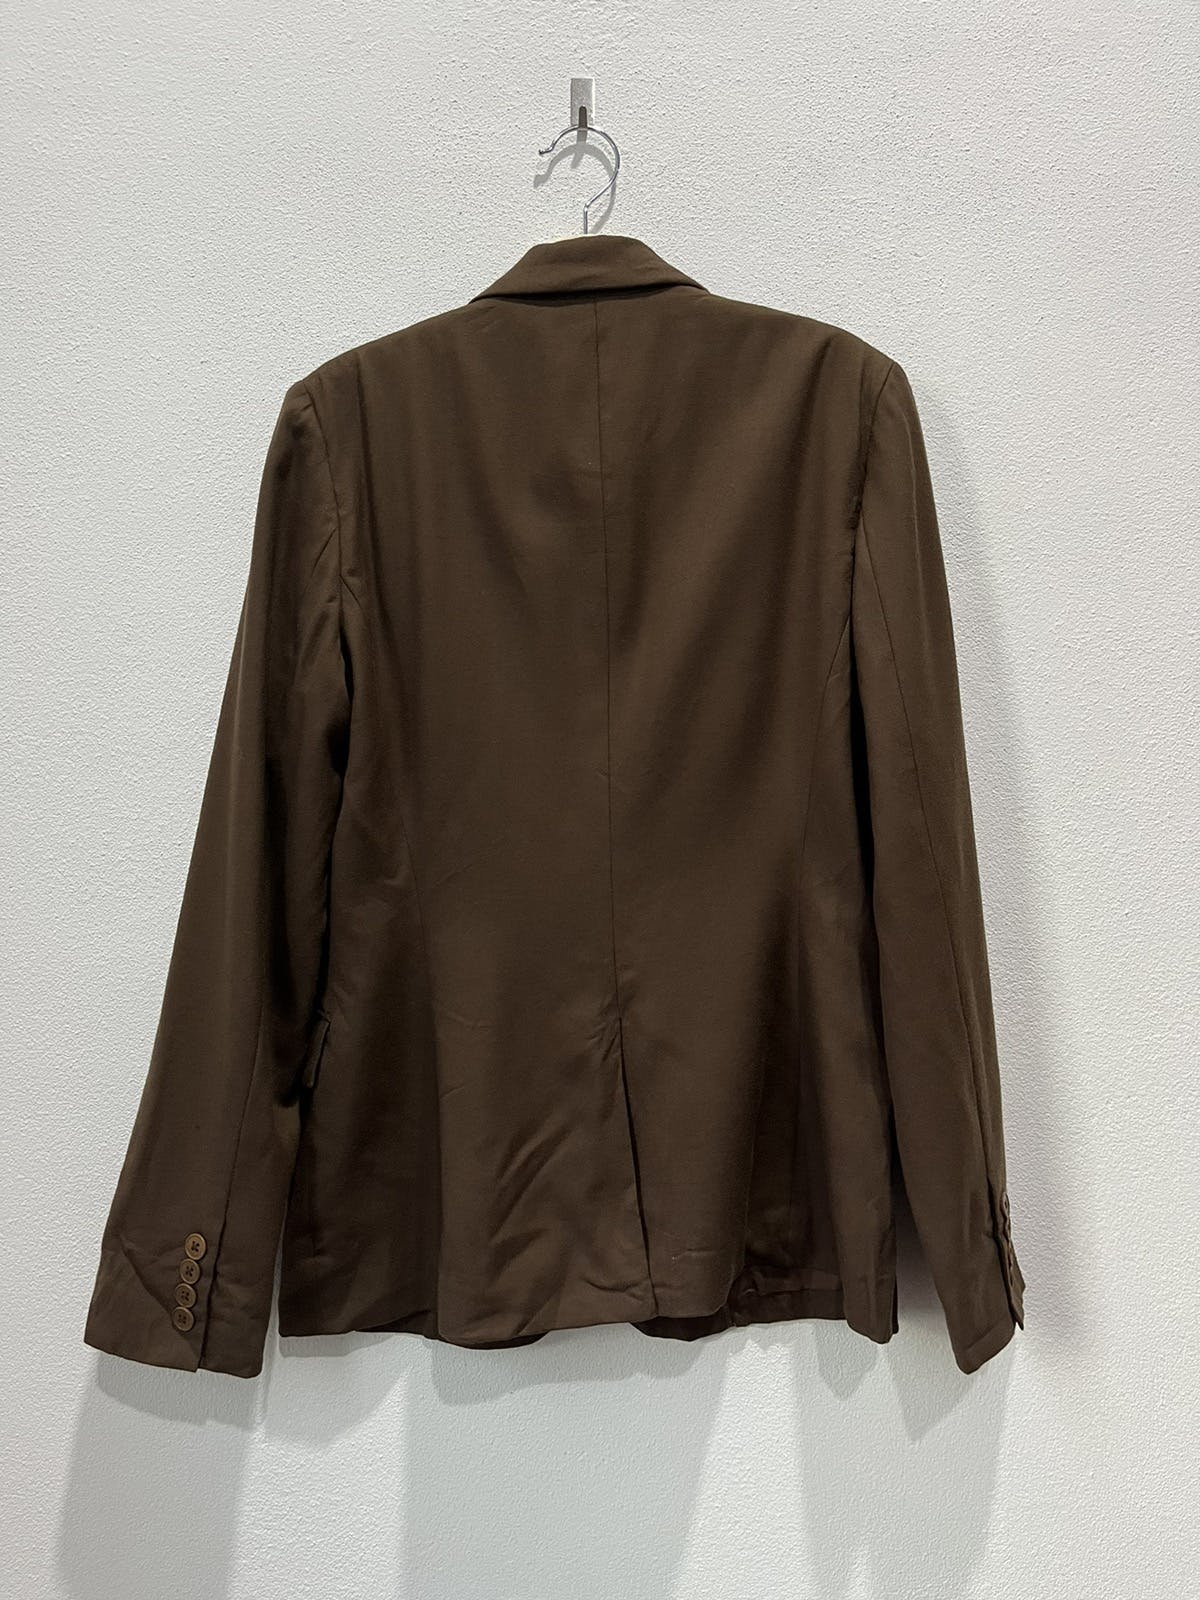 Ralph Lauren Outer Shell Wool Blazer/Jacket - 2